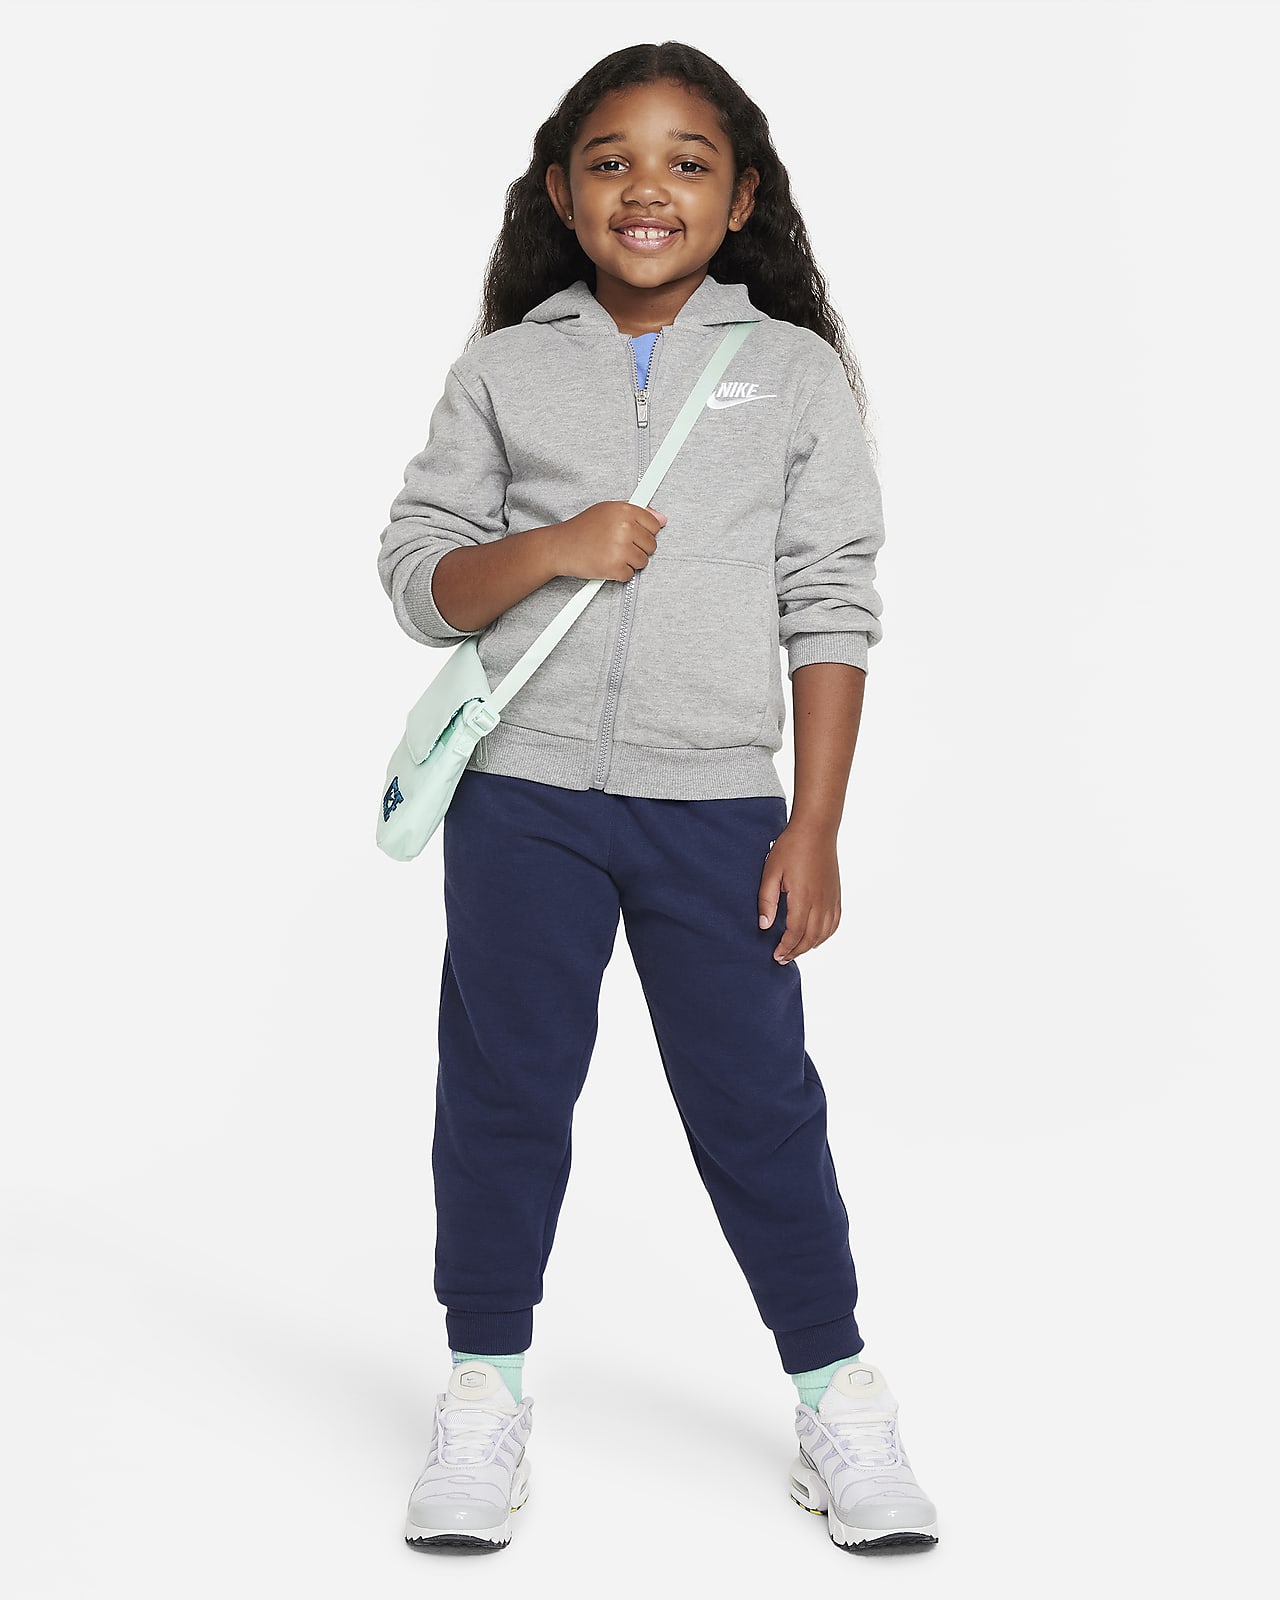 Little Nike Hoodie. Kids Club Sportswear Full-Zip Fleece